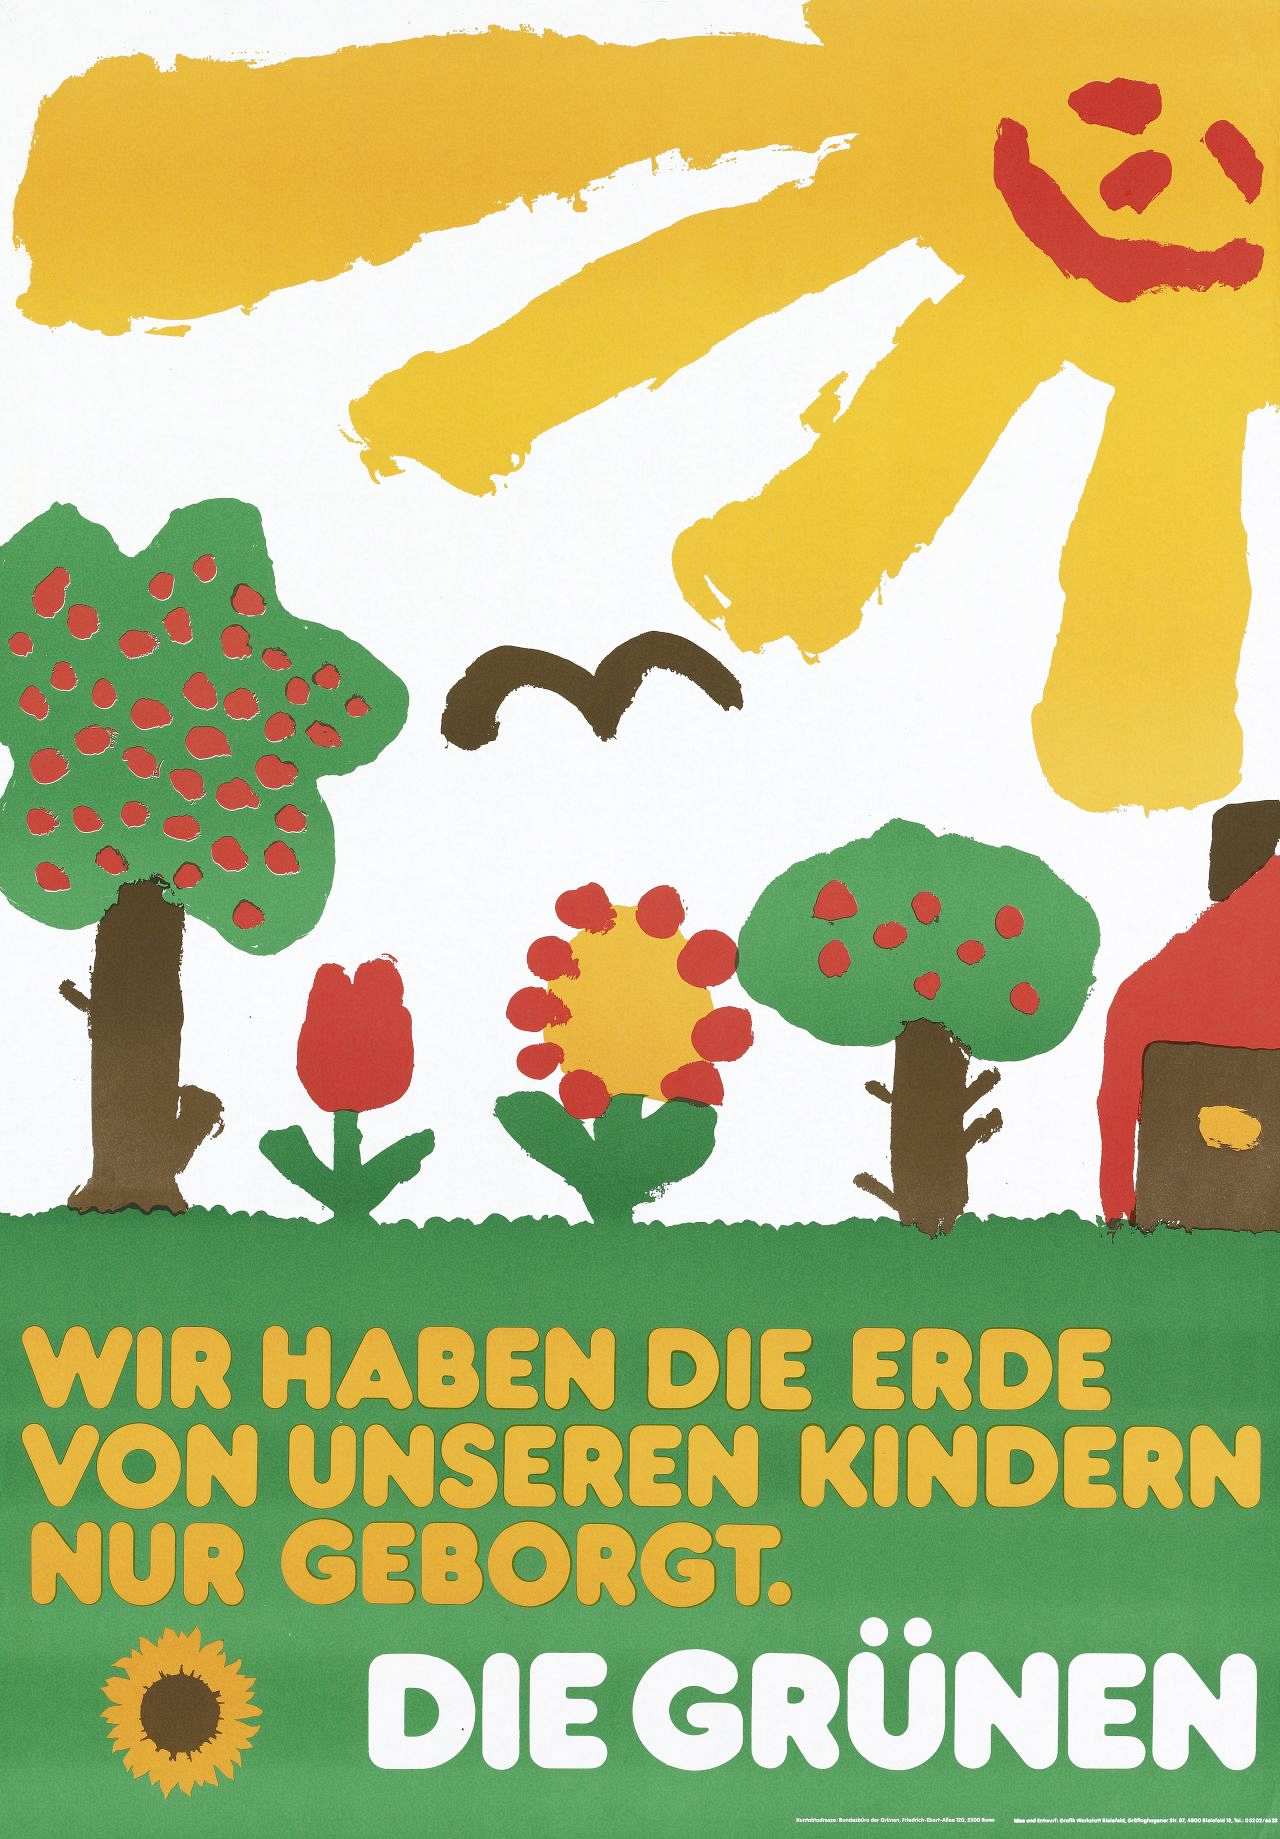 Motiv (farbige Kinderzeichnung): Wiese mit Blumen, Bäumen und Haus, darüber lachende Sonne; Text (gelb, weiß) unten: Wir haben die Erde / von unseren Kindern / nur geborgt. / Die Grünen; links unten Sonnenblume (gelb, braun).